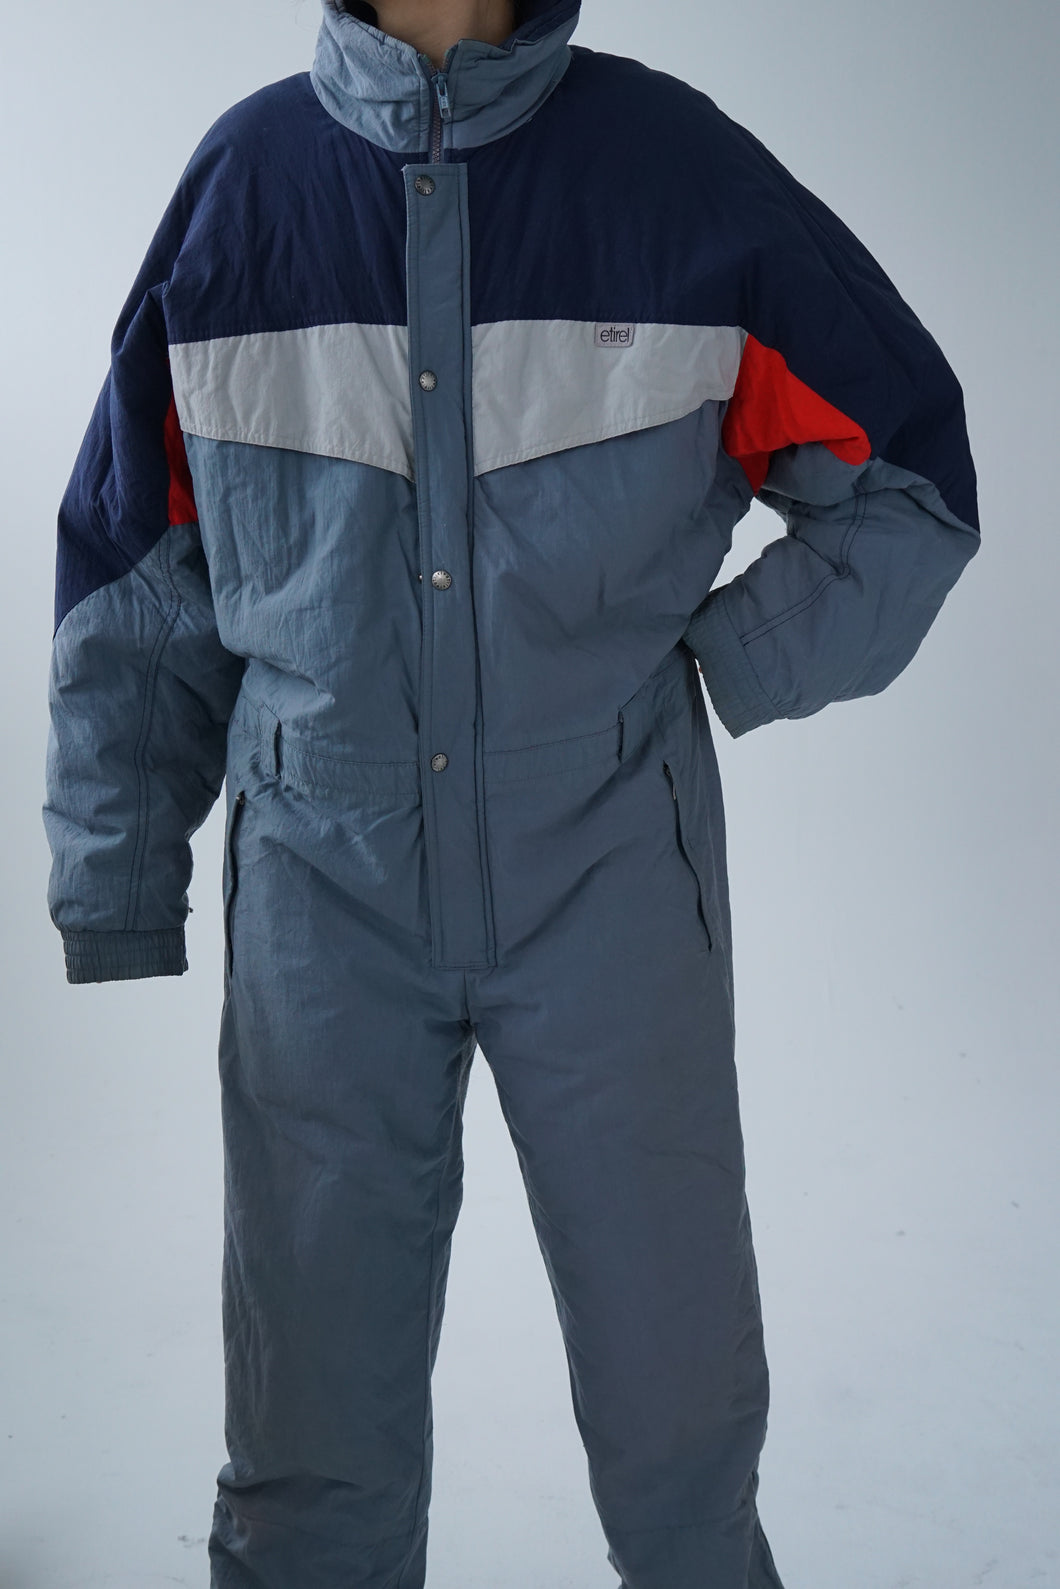 Vintage one piece Etirel ski suit, grey-blue snow suit for men size 54 (XL)